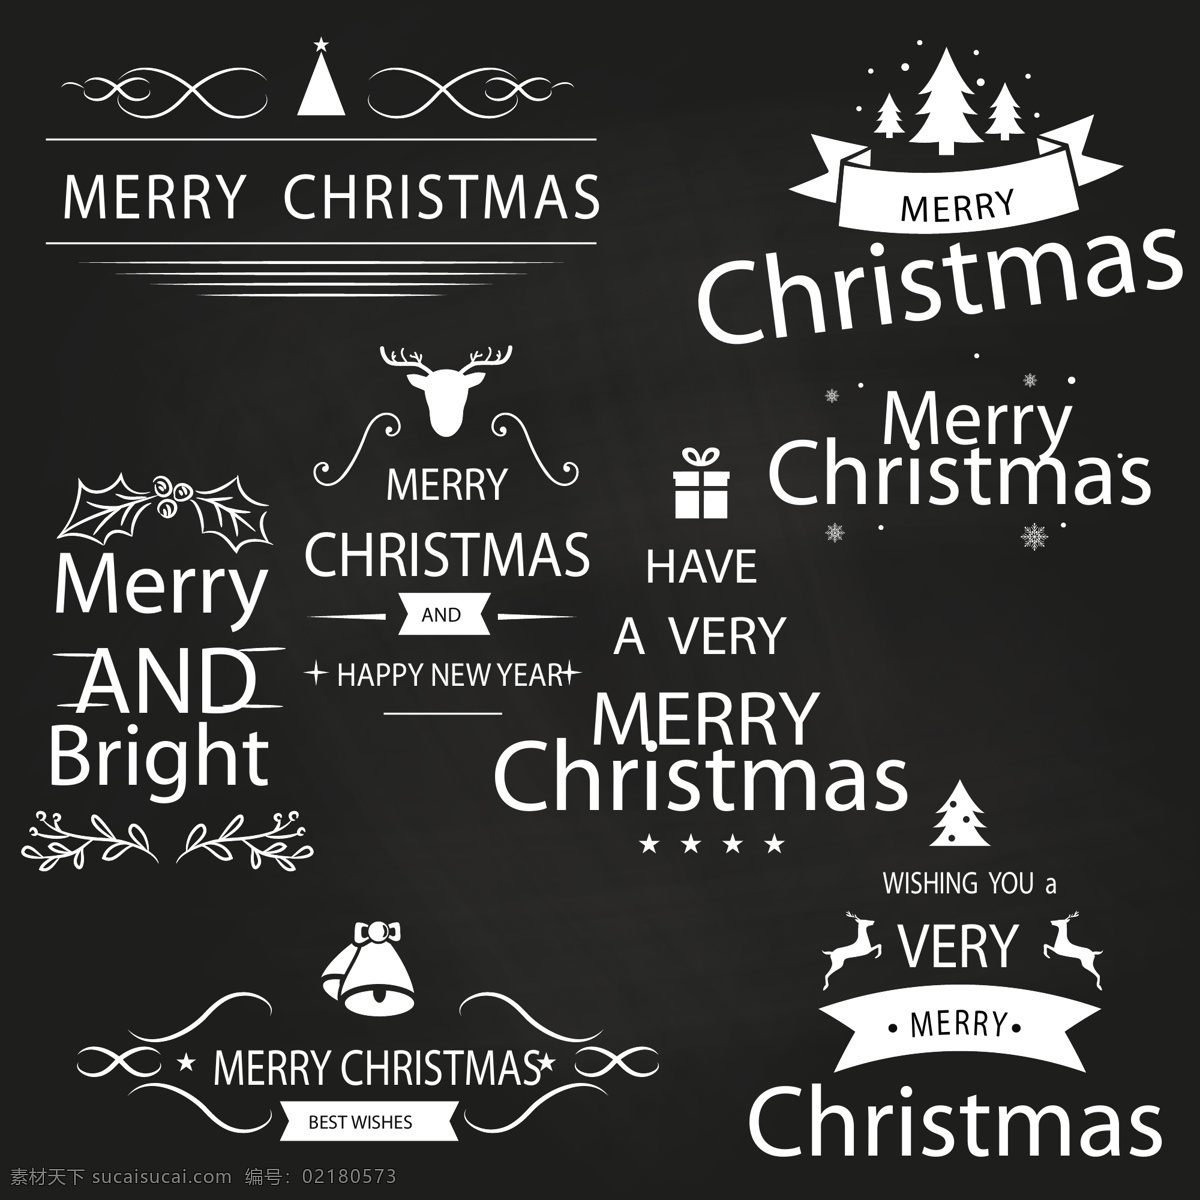 白色 精致 圣诞 标签 圣诞树 礼物 圣诞节 矢量素材 英文 铃铛 驯鹿